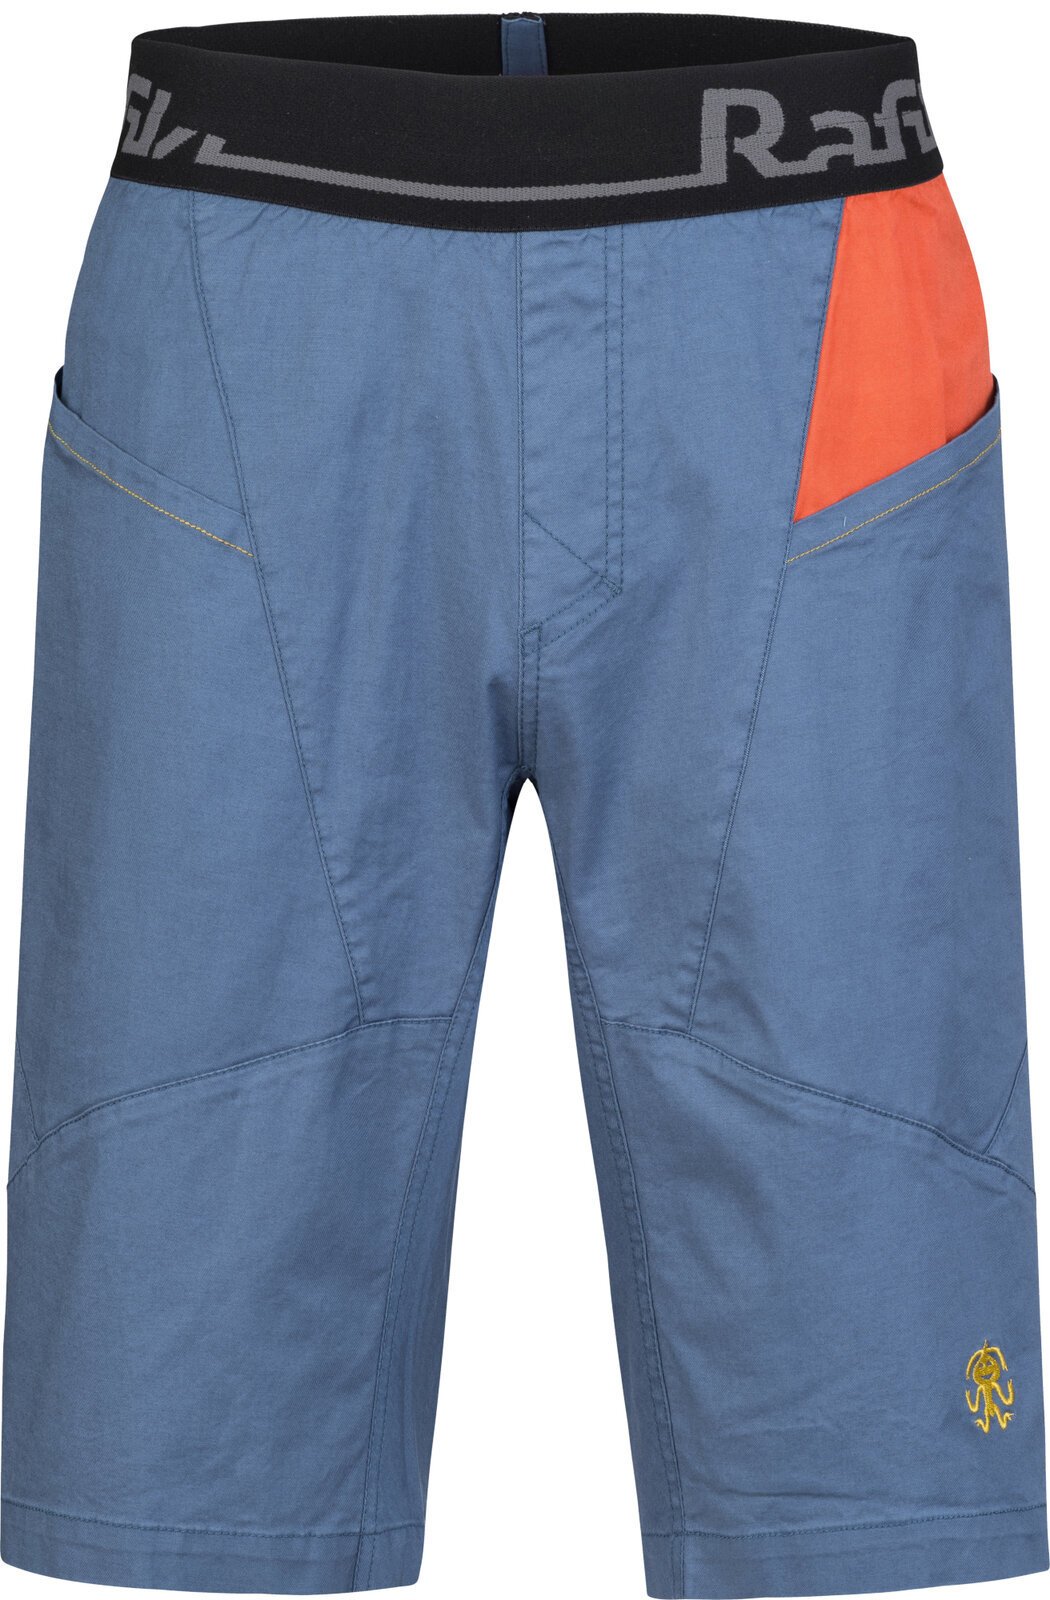 Outdoor Shorts Rafiki Megos Man Shorts Ensign Blue/Clay XS Outdoor Shorts